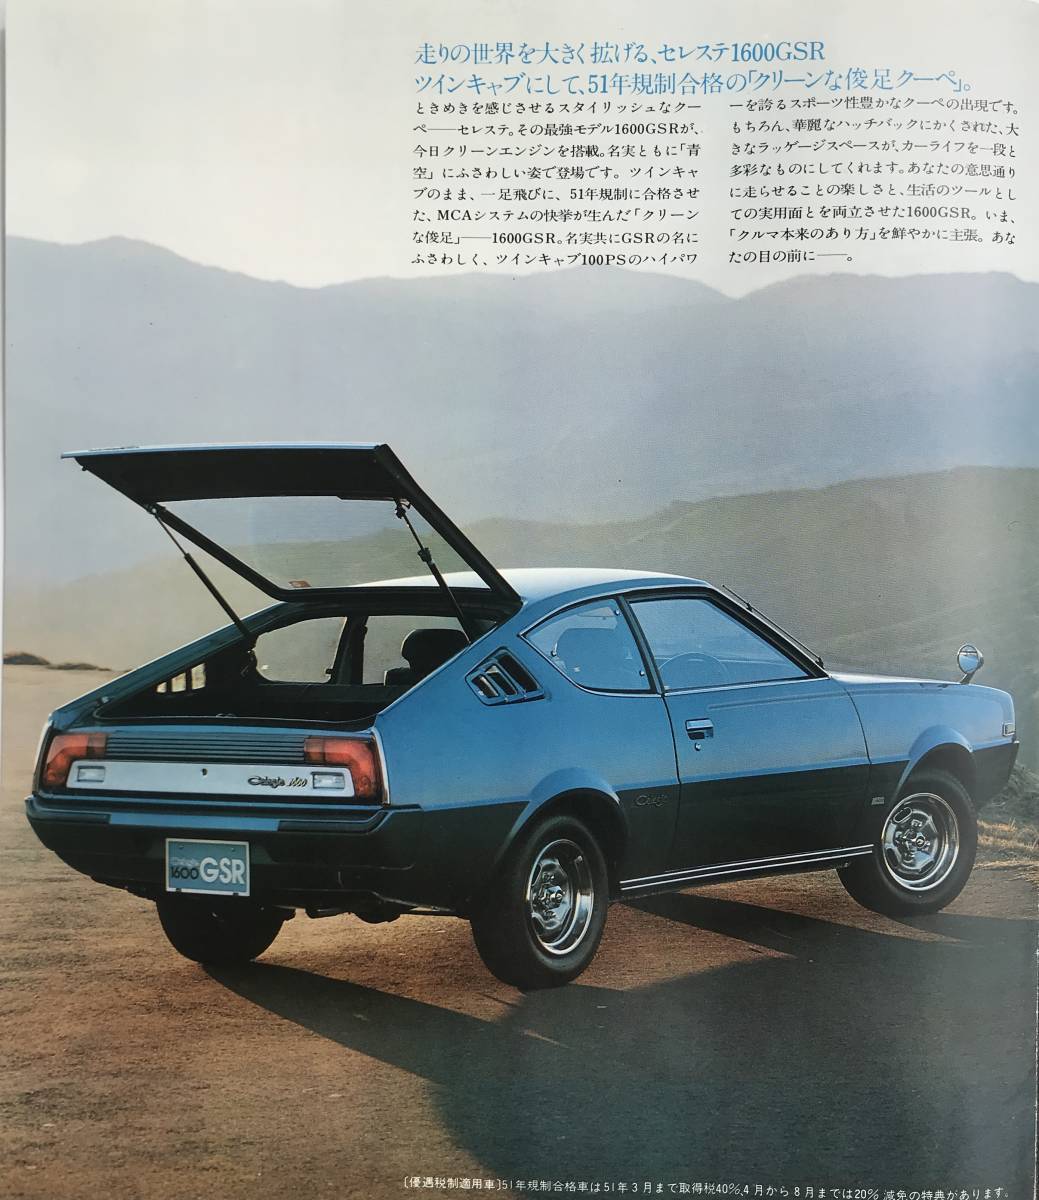 三菱 ランサー セレステ GSR 1600 前期型 A70系 カタログ 1976年 2ドアクーペ 三菱自動車 ランサーセレステ 旧車 昭和レトロ_画像3